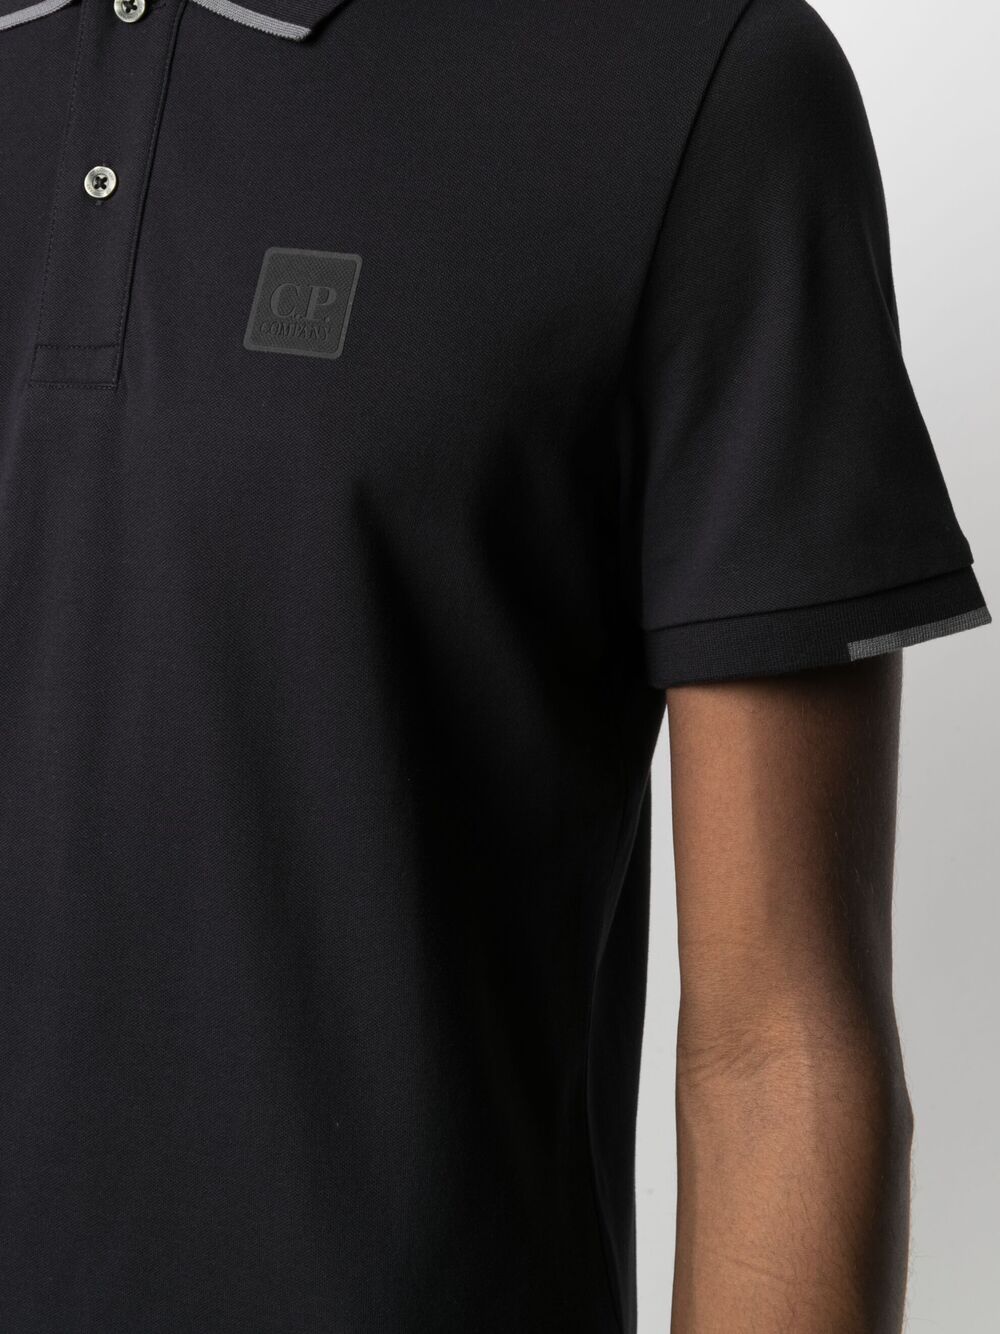 C.P. COMPANY Logo Patch Polo Shirt Black - MAISONDEFASHION.COM